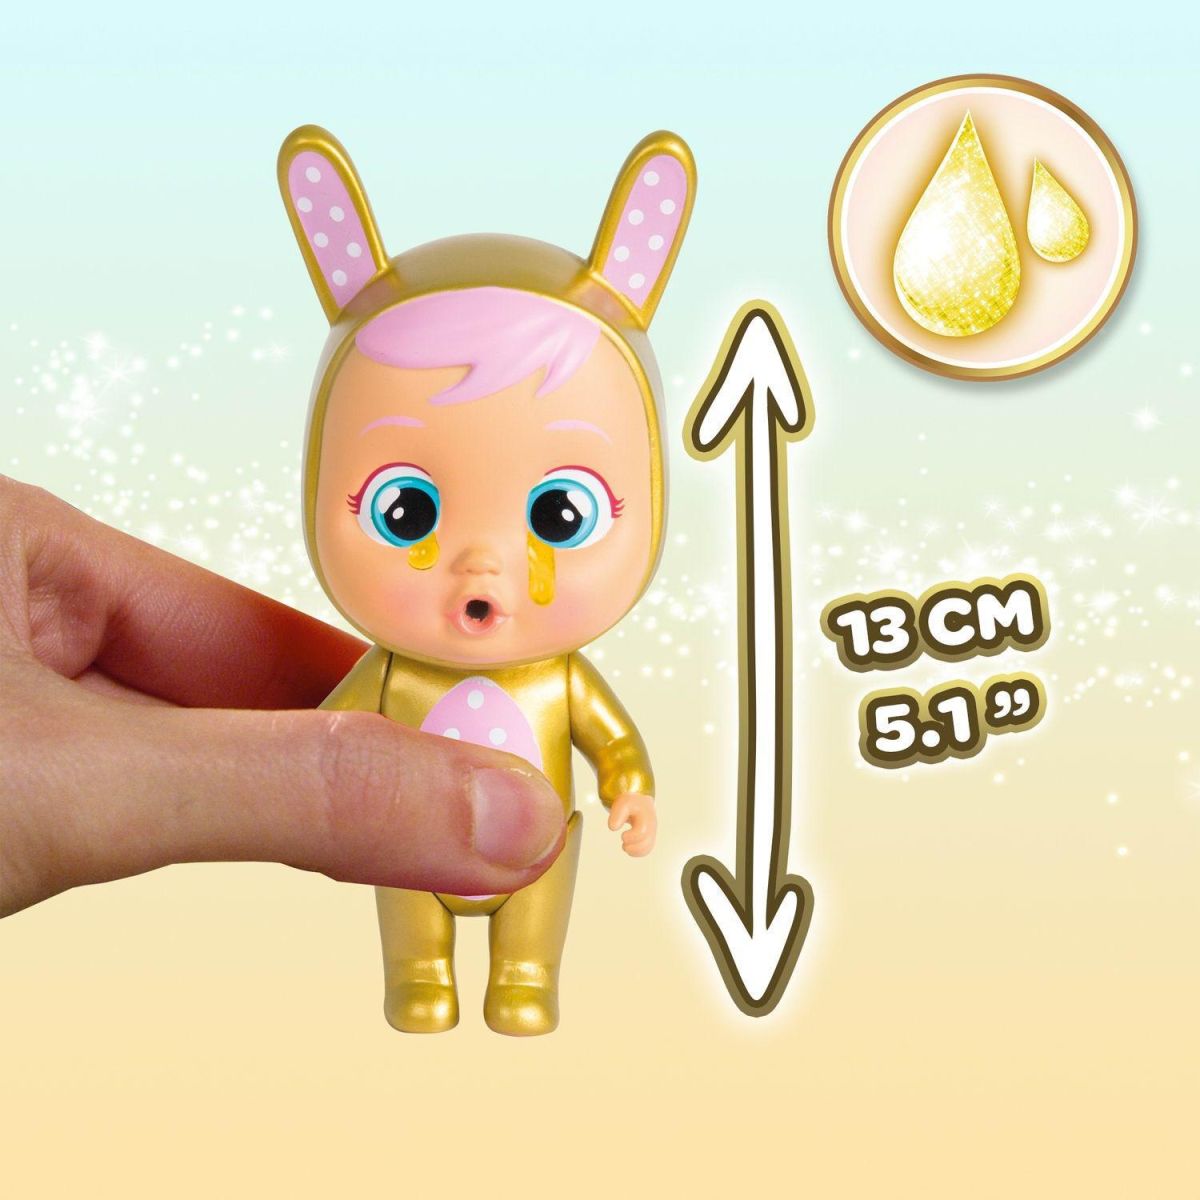 Кукла IMC Toys Cry Babies Magic Tears GOLDEN EDITION Плачущий младенец с домиком и аксессуарами 7 видов